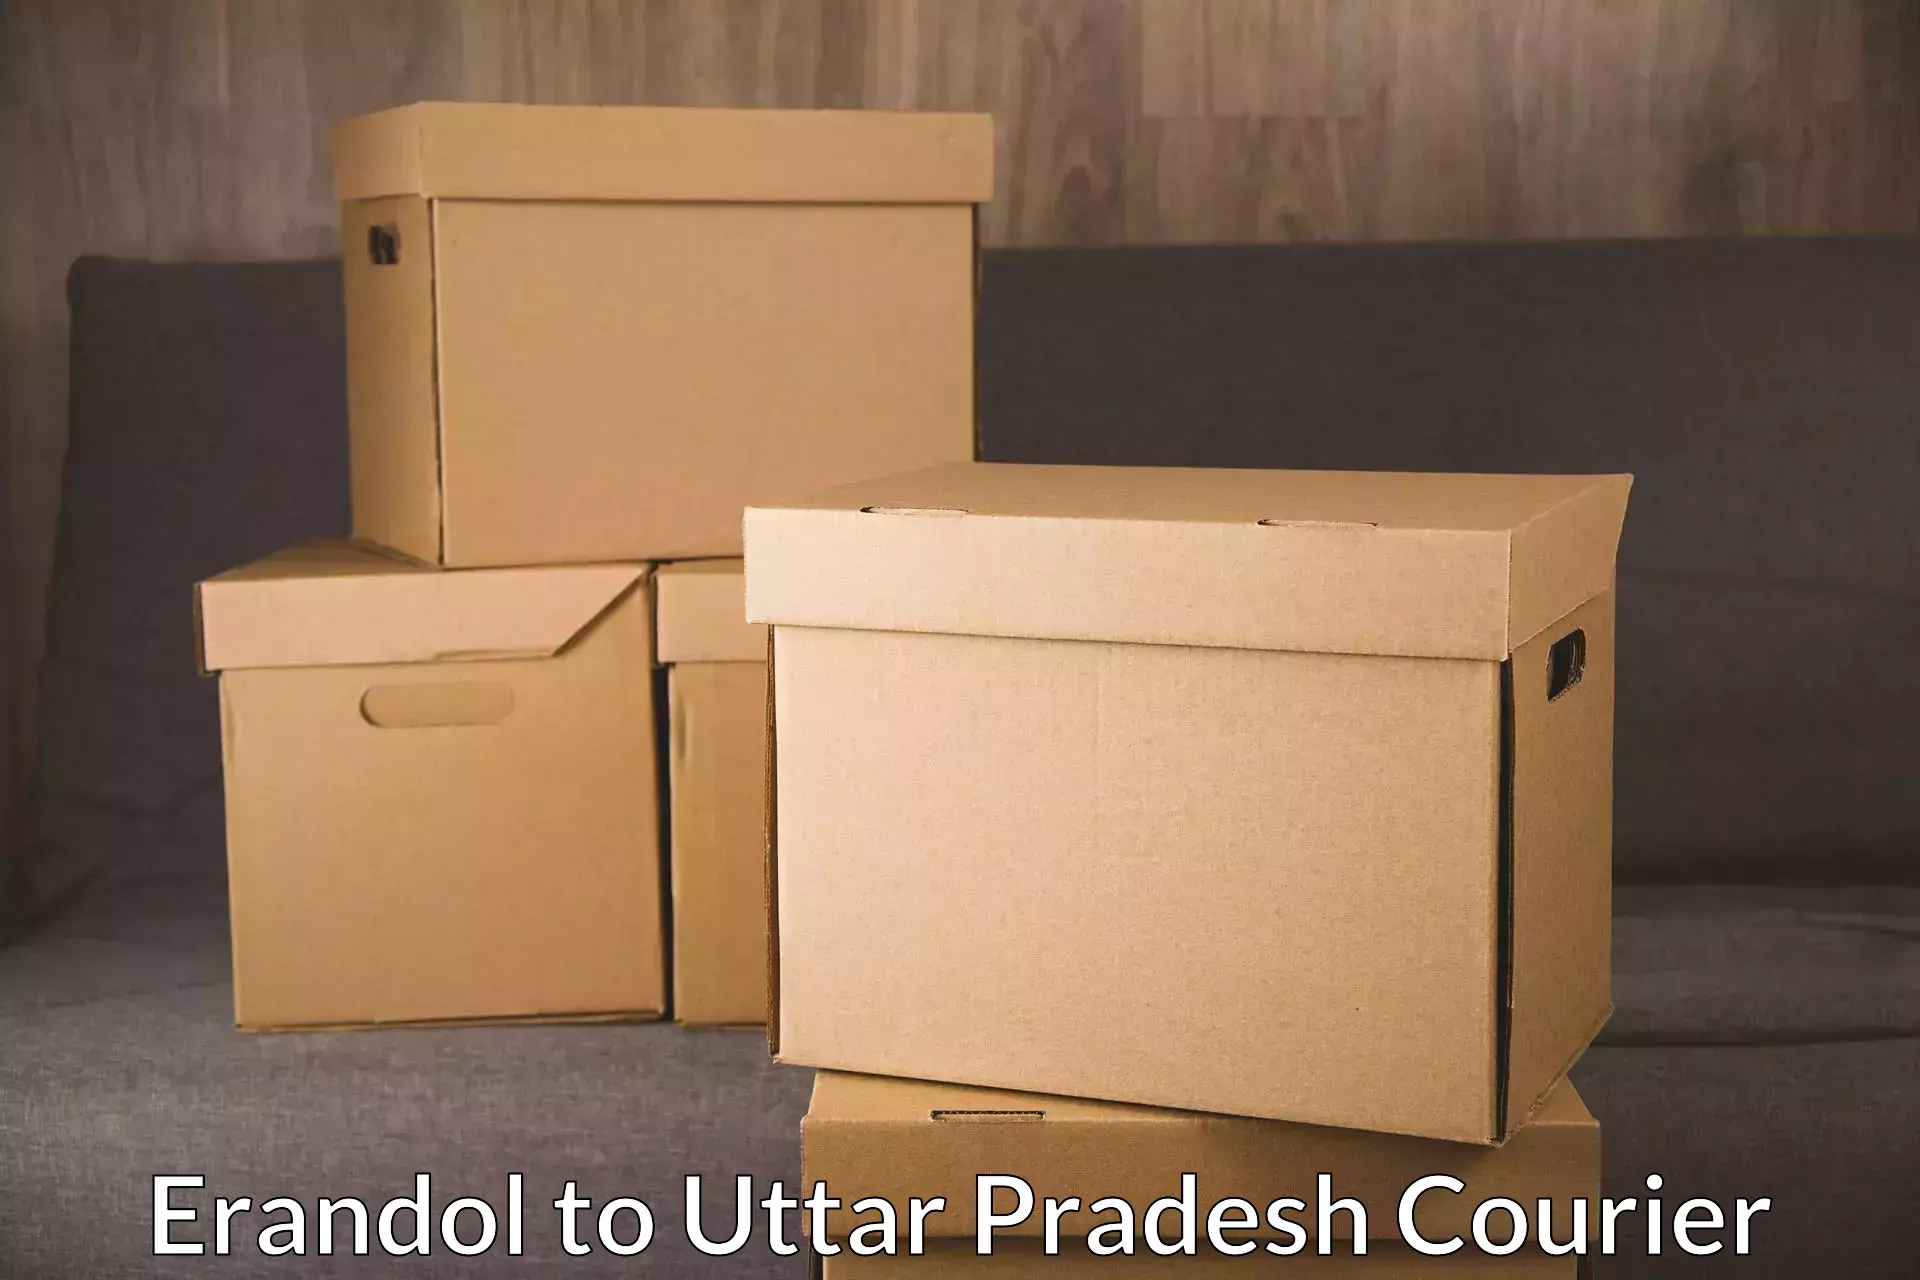 Weekend courier service Erandol to Uttar Pradesh